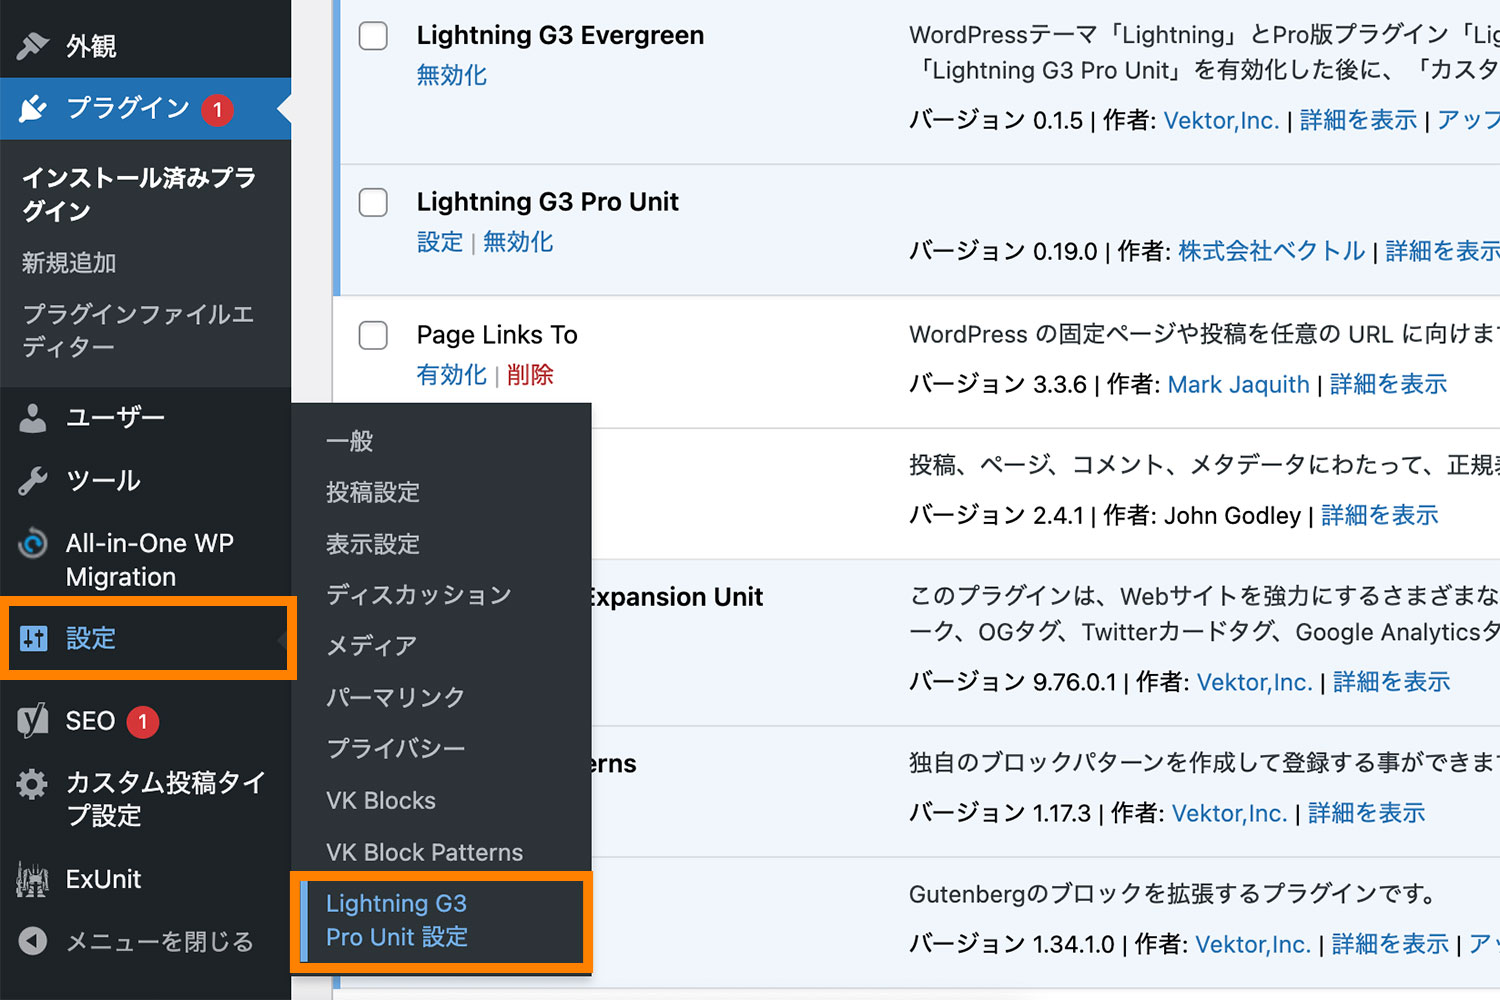 「設定」→「Lightning G3 Pro Unit 設定」をクリック